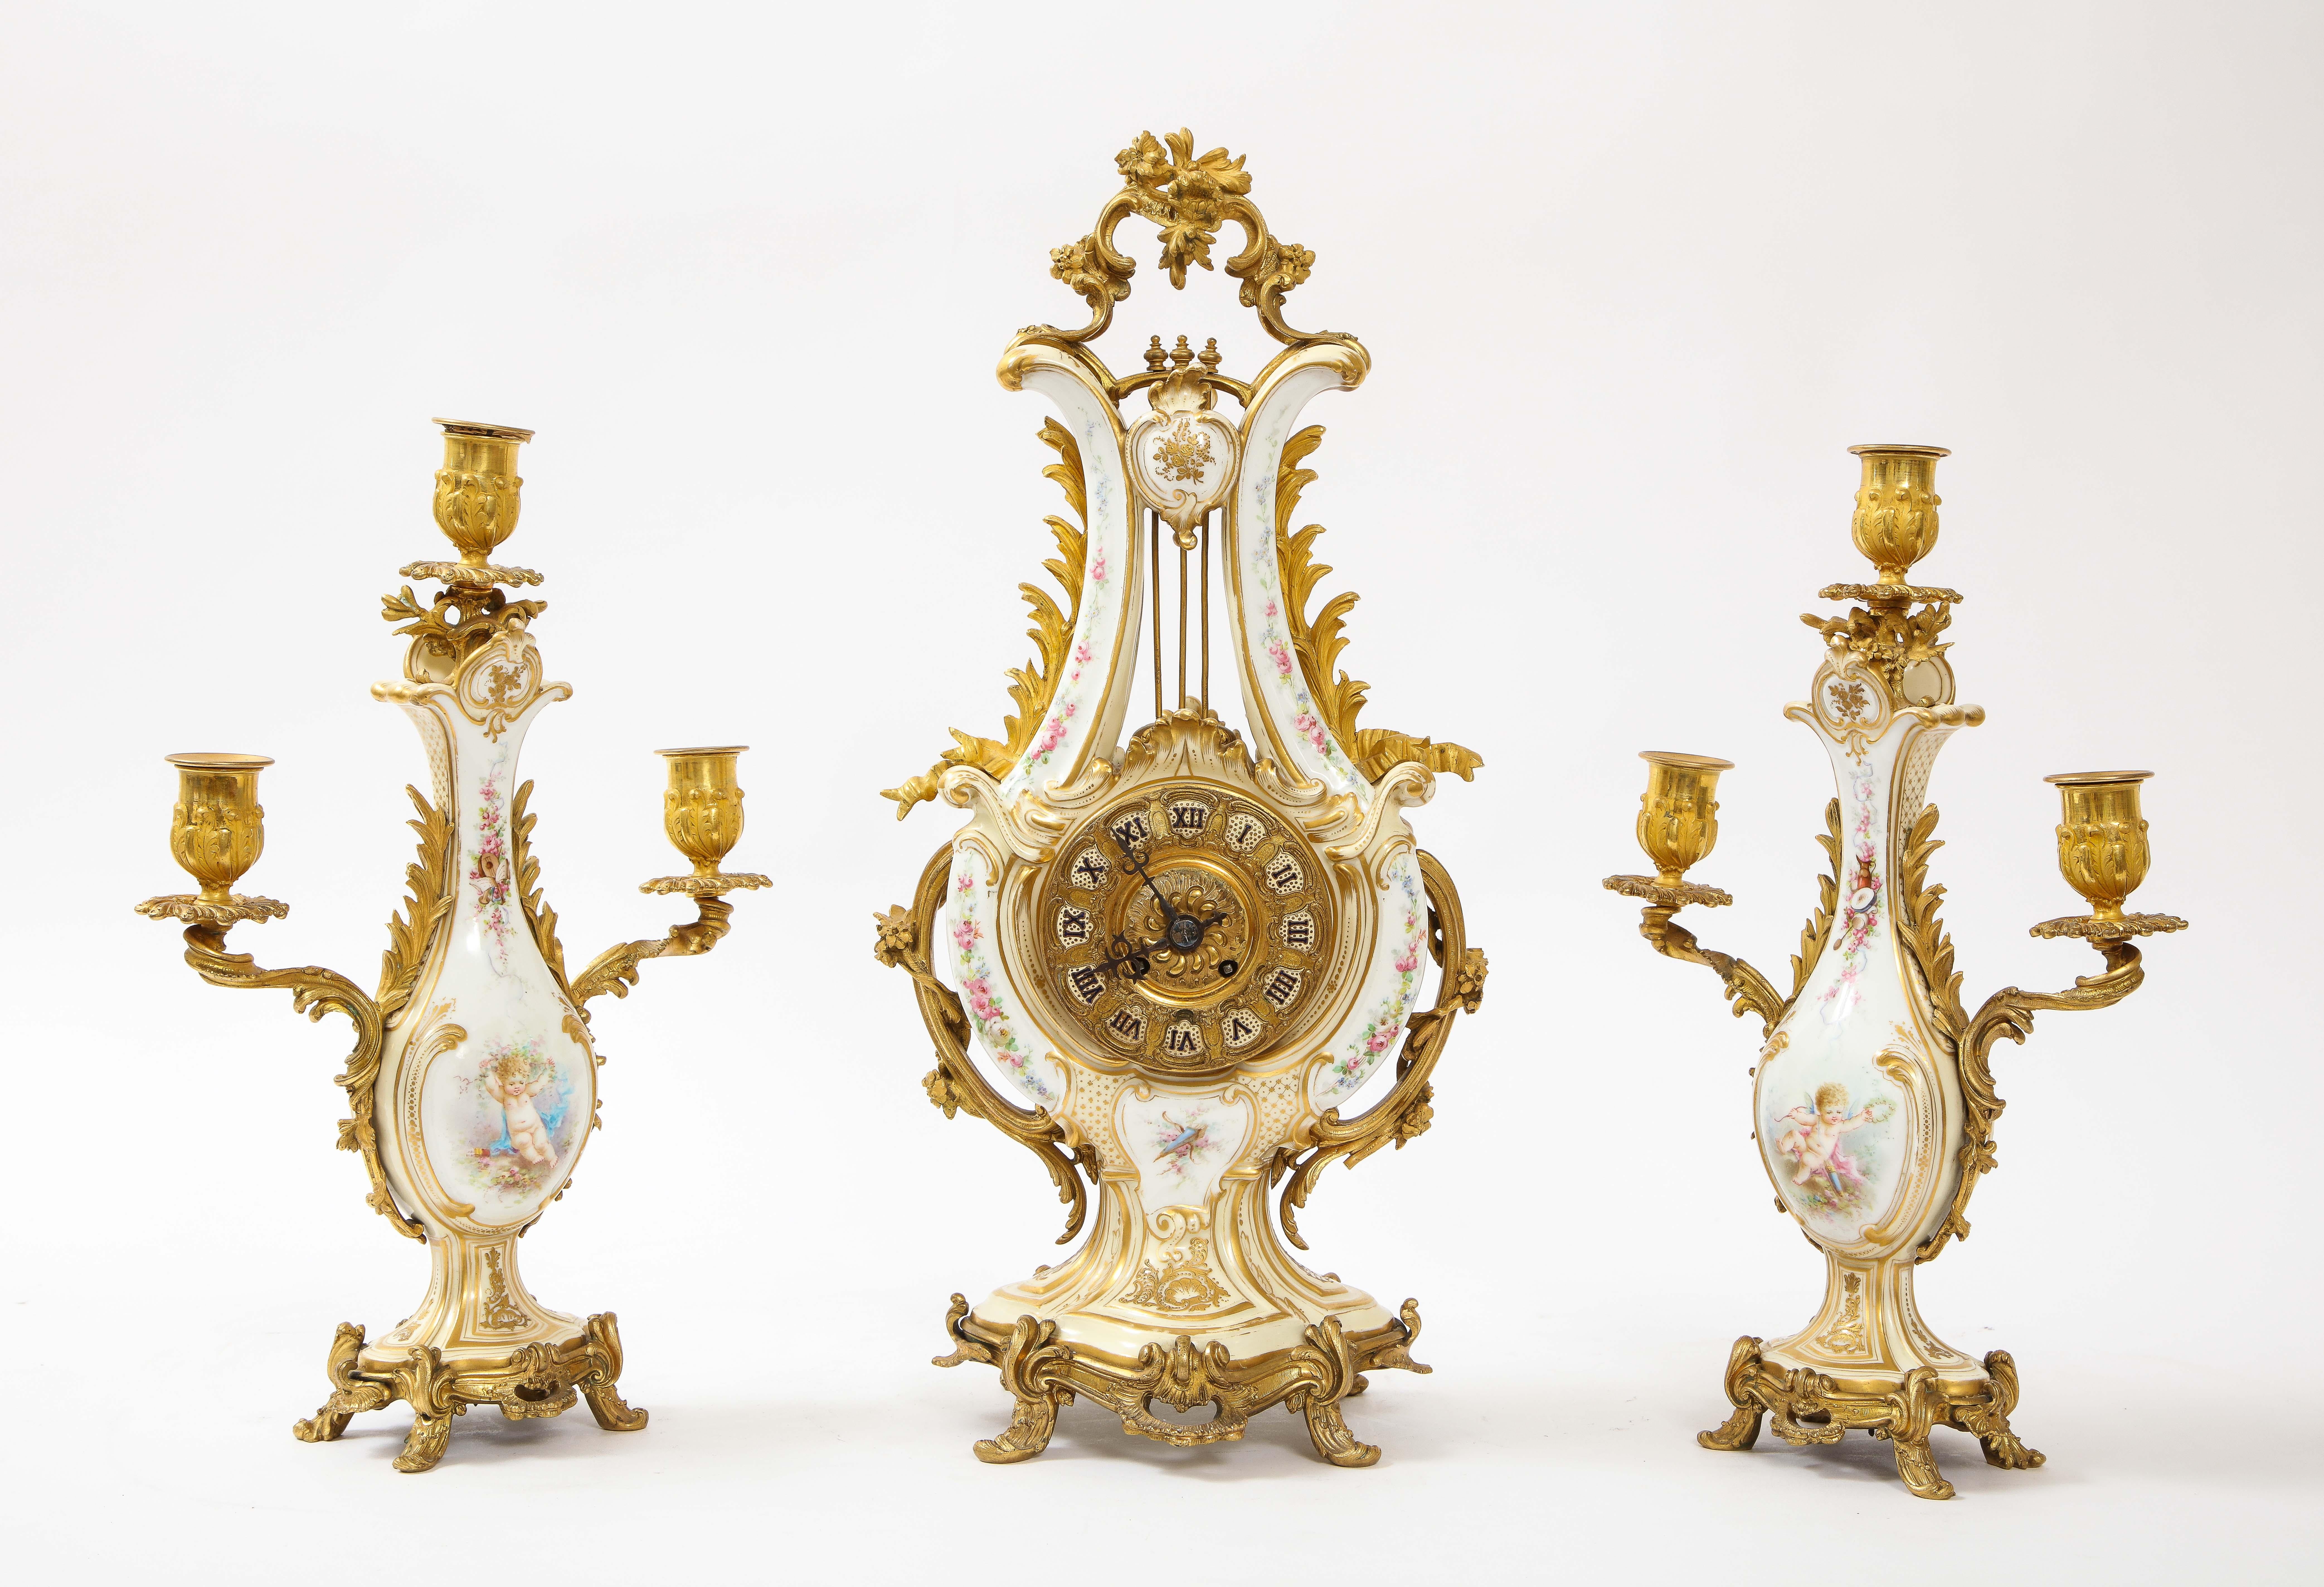 Eine prächtige und sehr ungewöhnliche 19. Jahrhundert Französisch dore Bronze montiert Sevres weißes Porzellan dreiteilige Uhr und drei-Licht-Kandelaber Garnitur gesetzt. Die leierförmige Uhr und die Kandelaber sind aus feinstem französischen